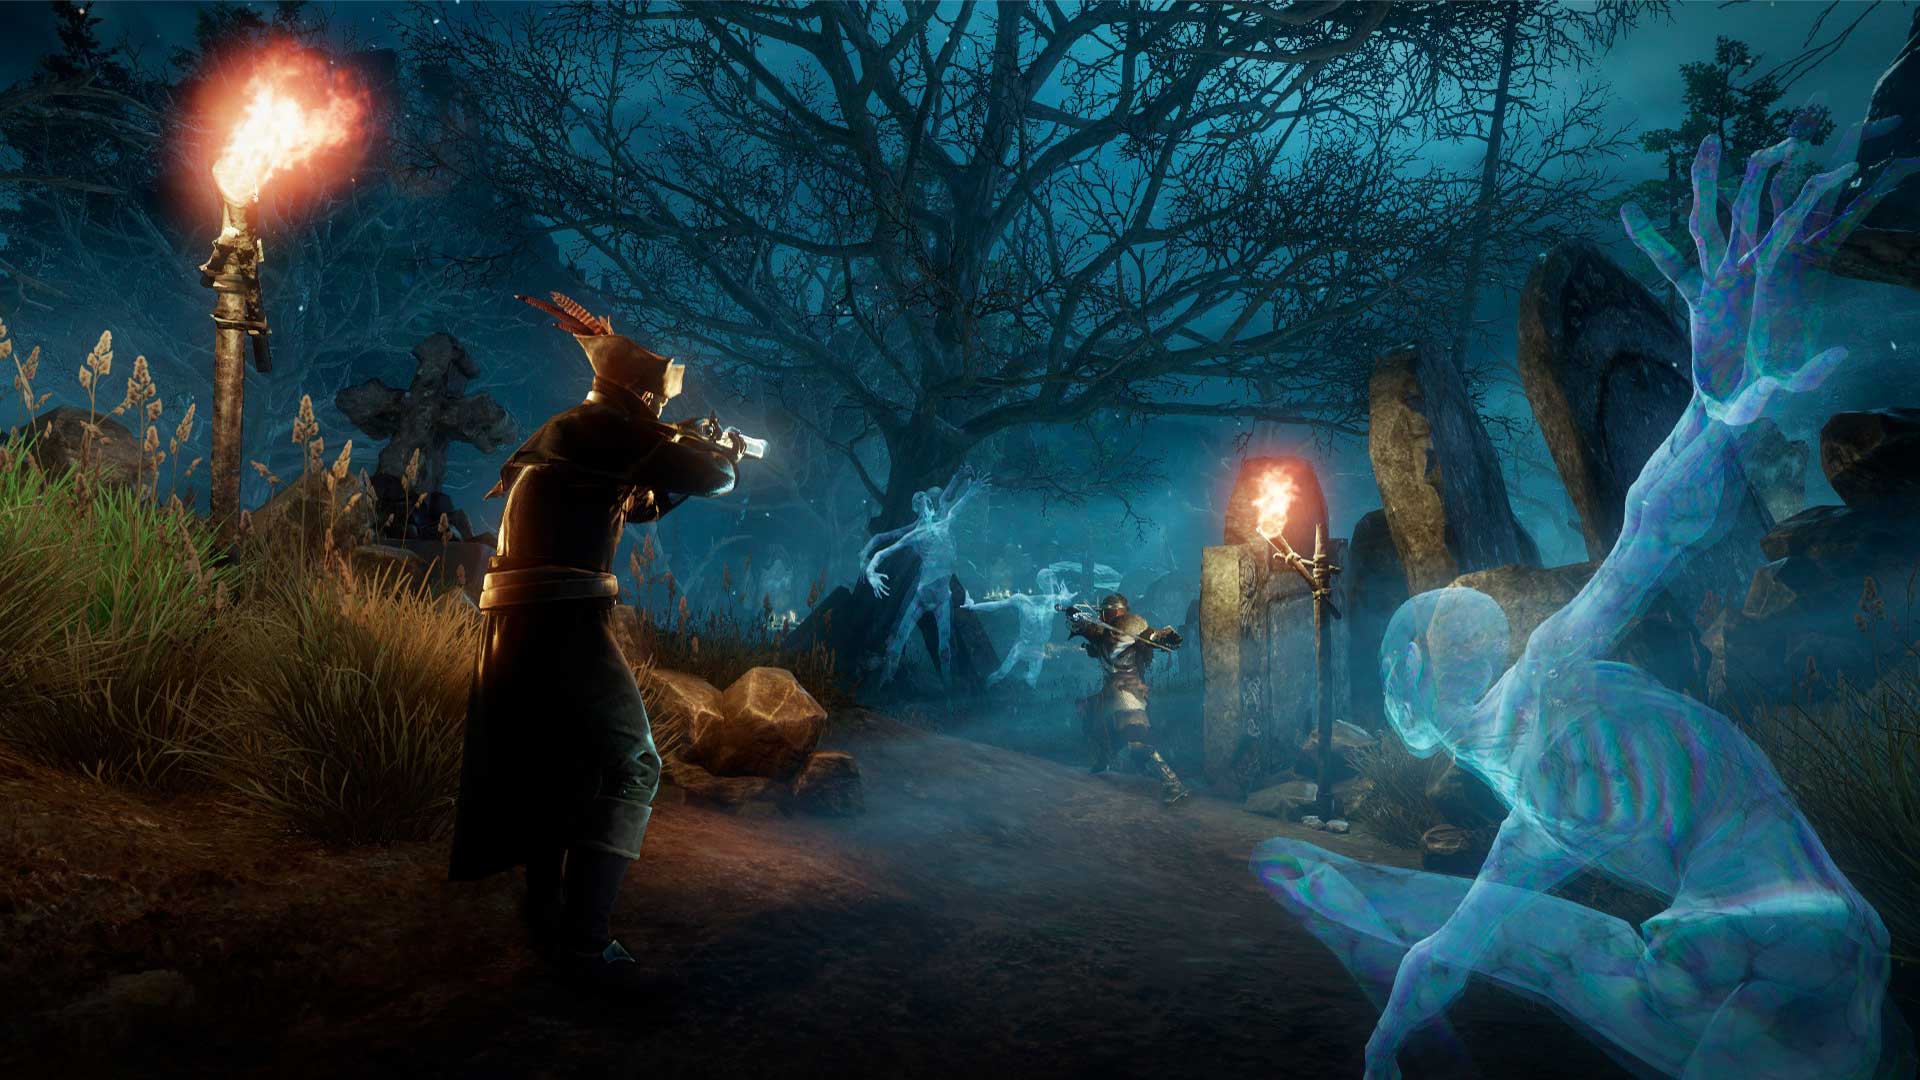 Un'immagine di giocatori del Nuovo Mondo che sparano moschetti in un cimitero.